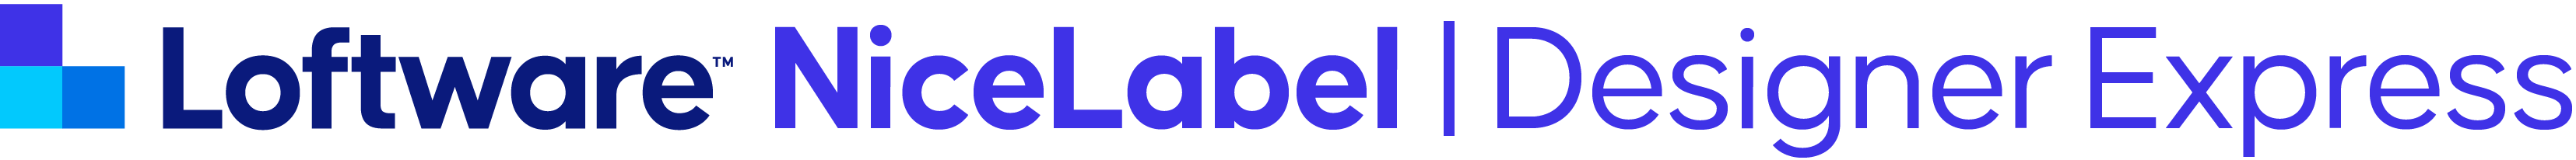 logo nicelabel cloud designer